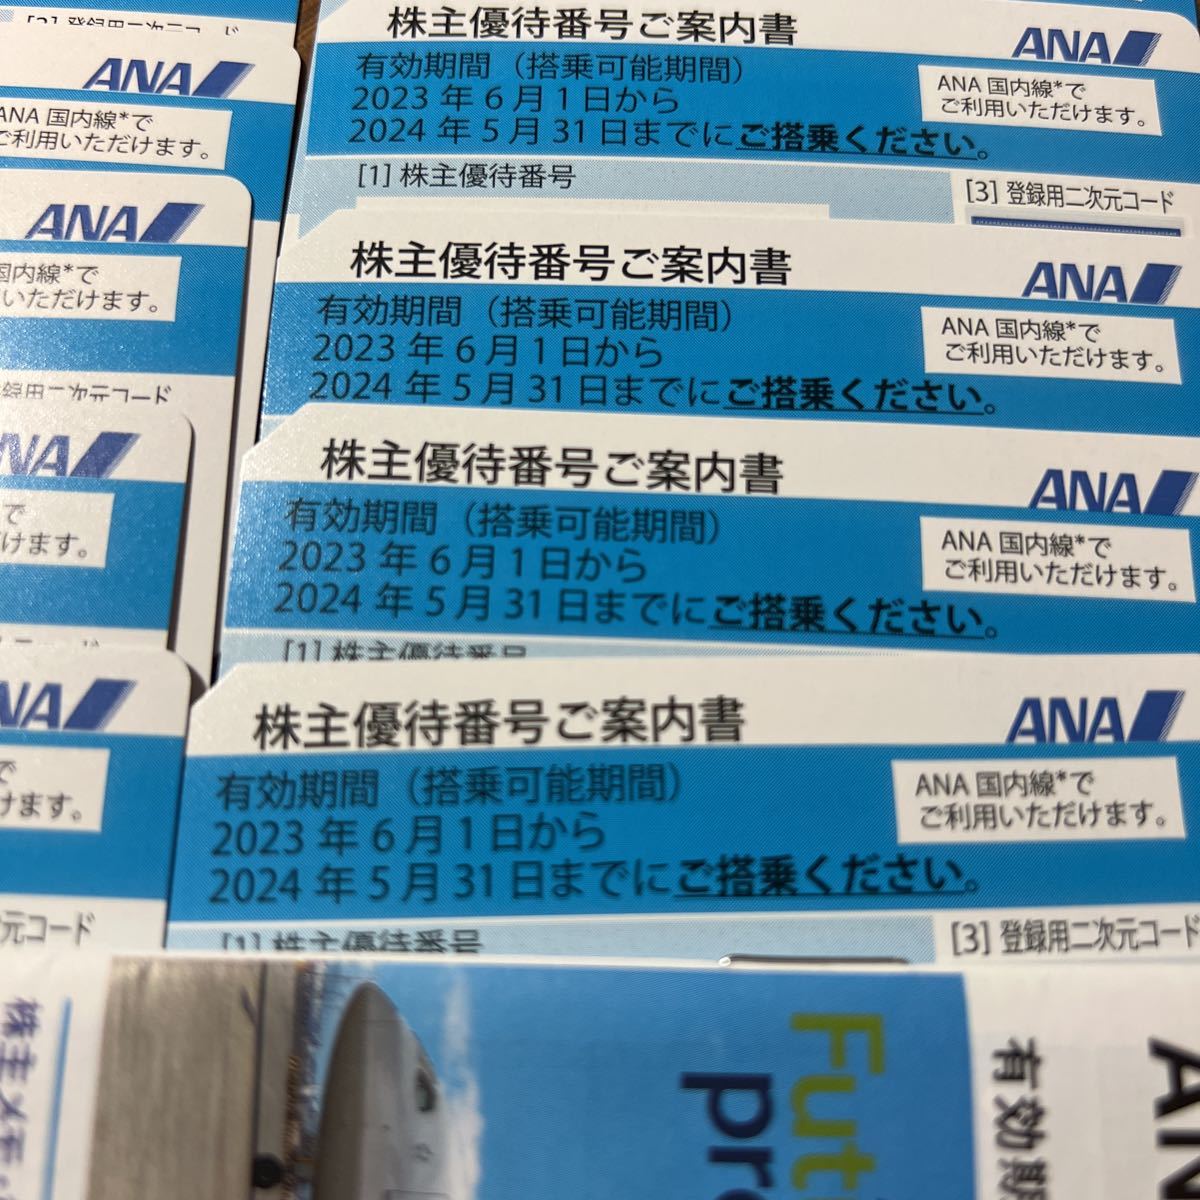 総合3位】 ANA(全日本空輸) - ☆ANA株主優待券11枚 2021年5月31日迄